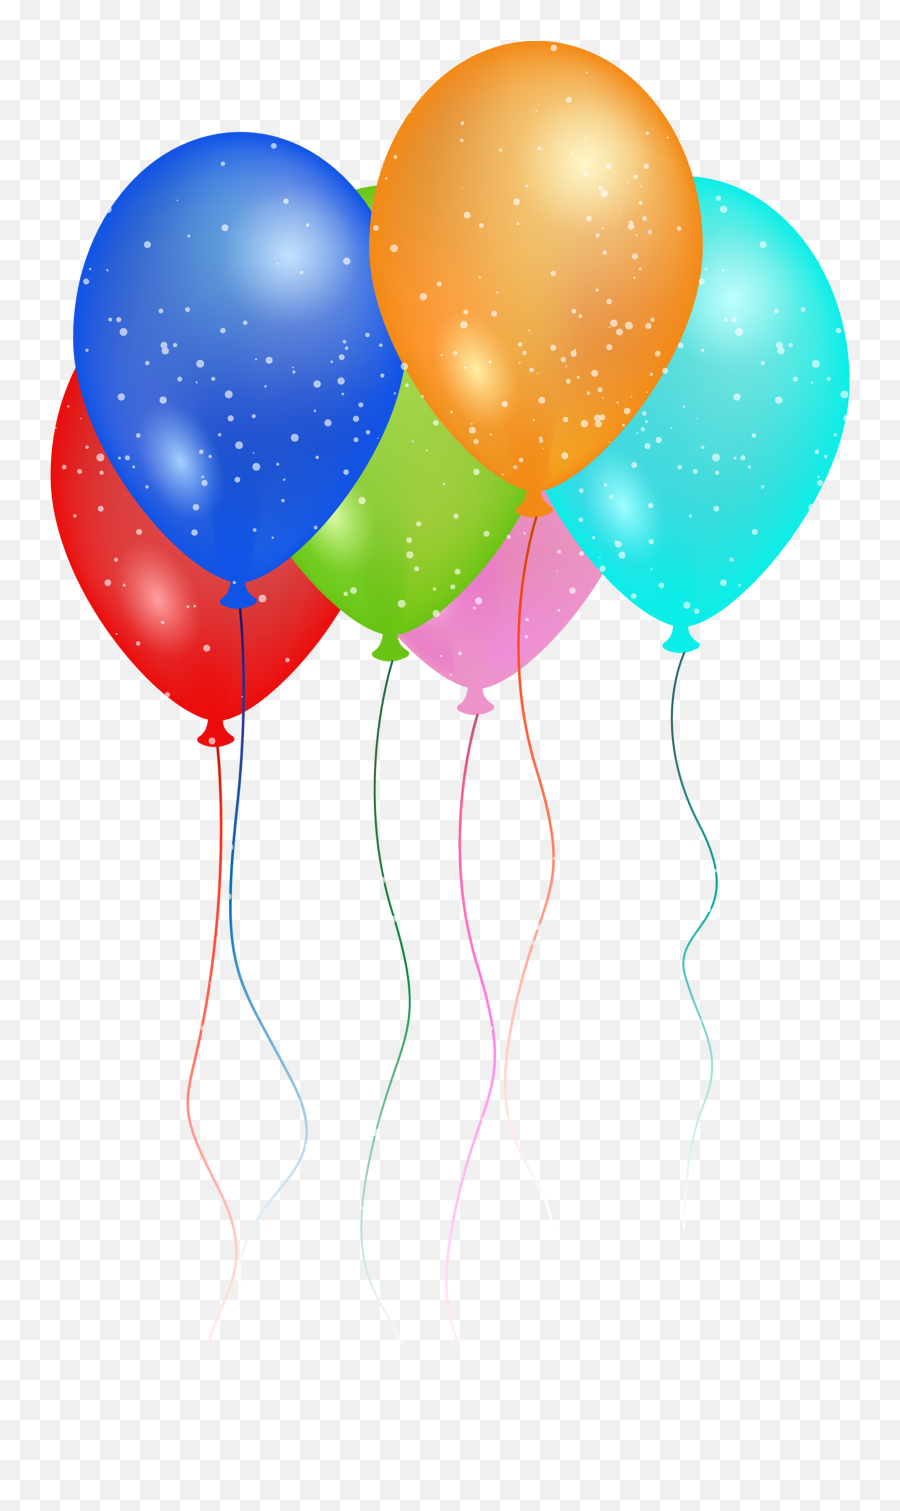 Birthday Cake Clipart No Background - Birthday 2000x2788 Balloon Clipart For Birthday Party Emoji,Cake Clipart